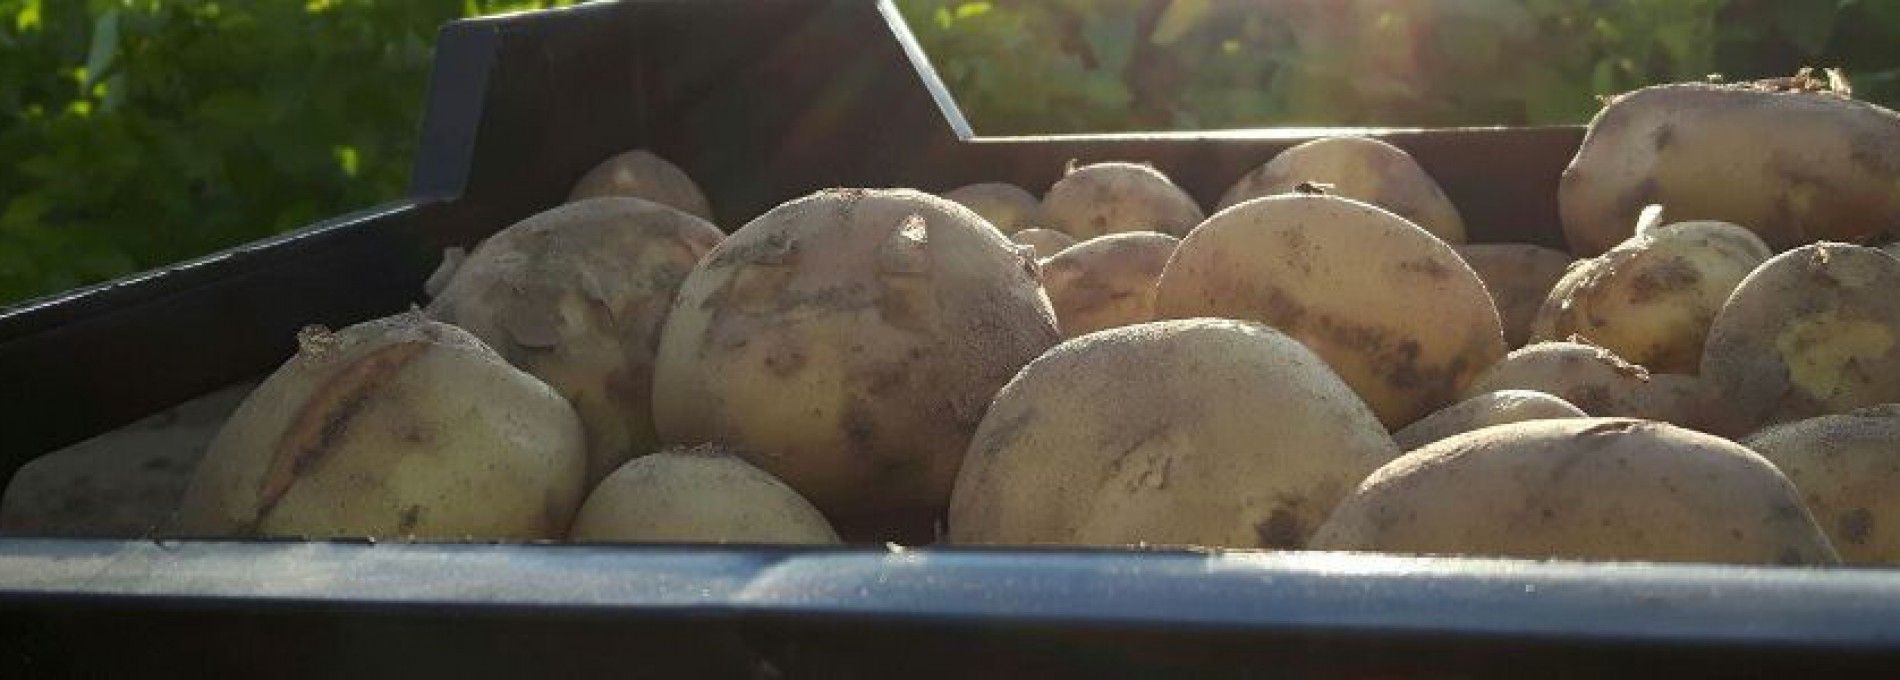 Amelander Kartoffeln - Ameländer Produkte - VVV Ameland